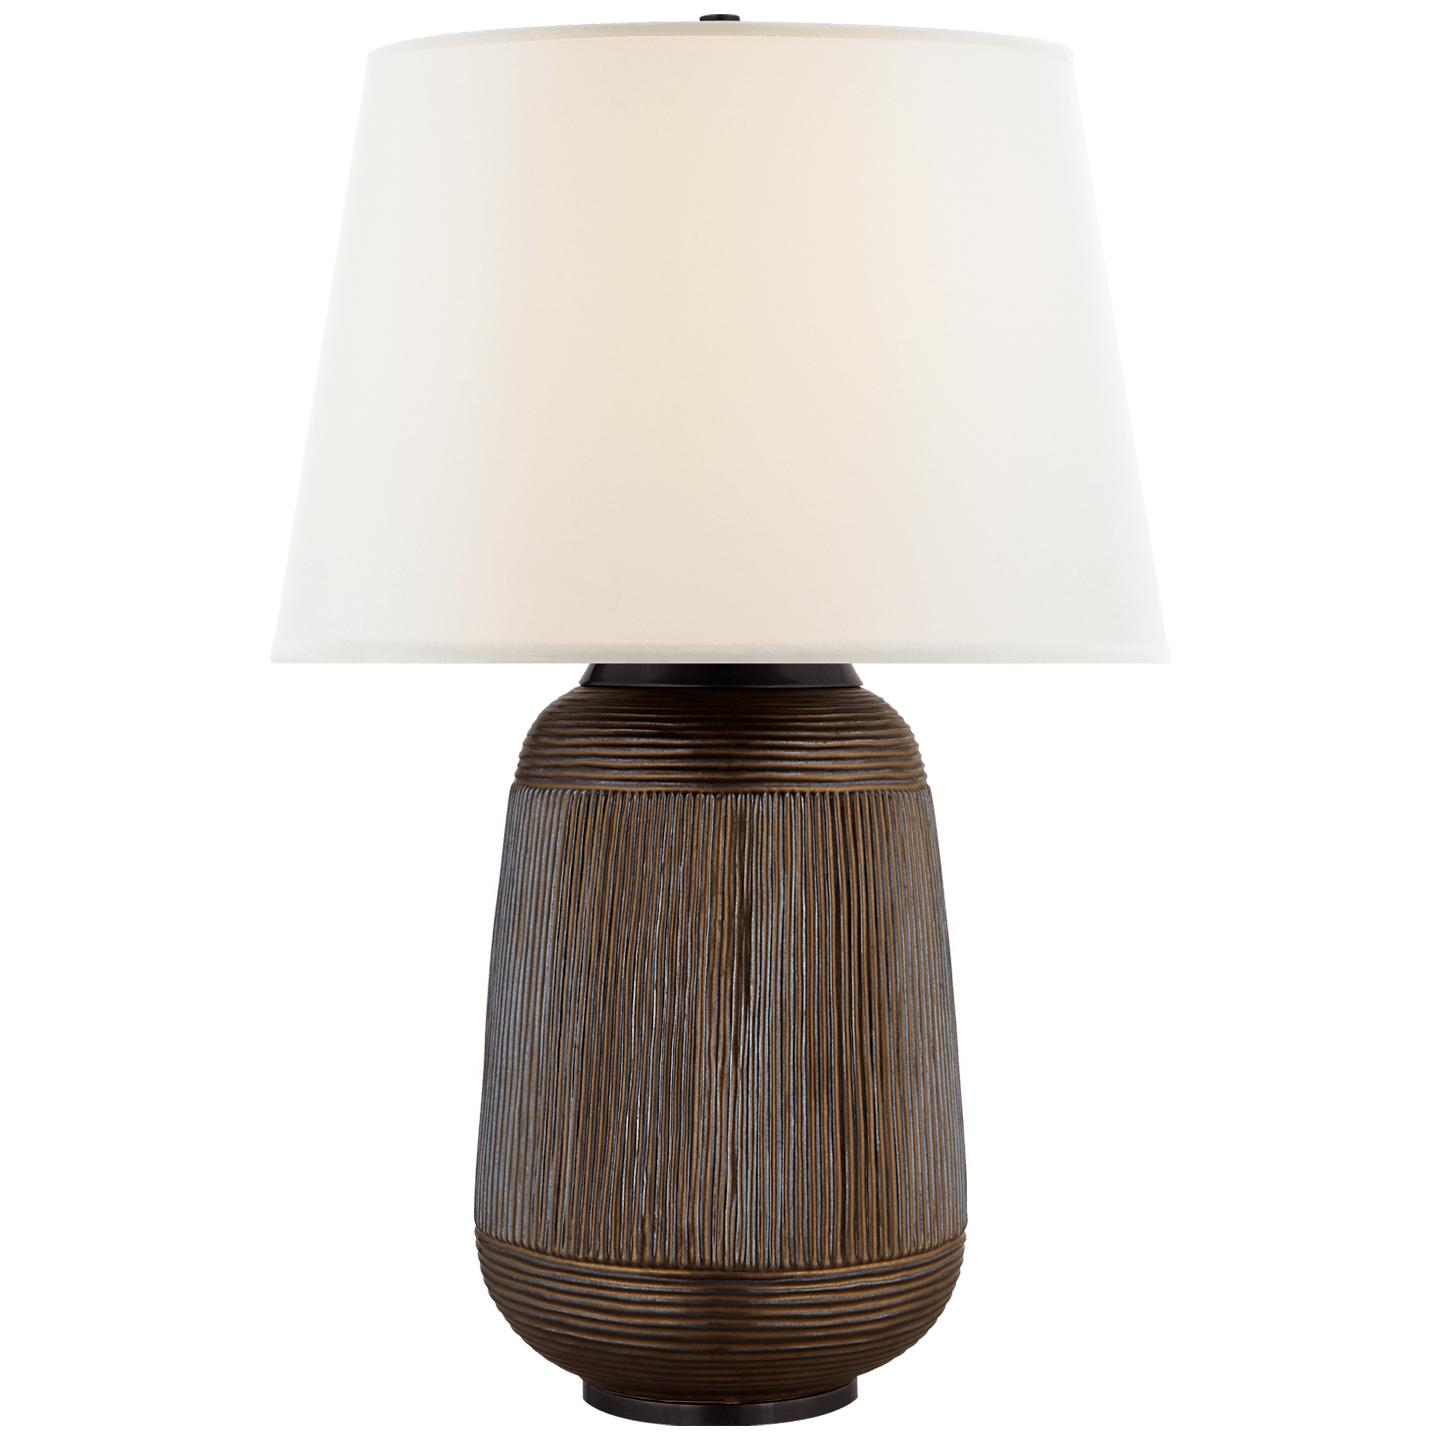 Купить Настольная лампа Monterey Large Table Lamp в интернет-магазине roooms.ru